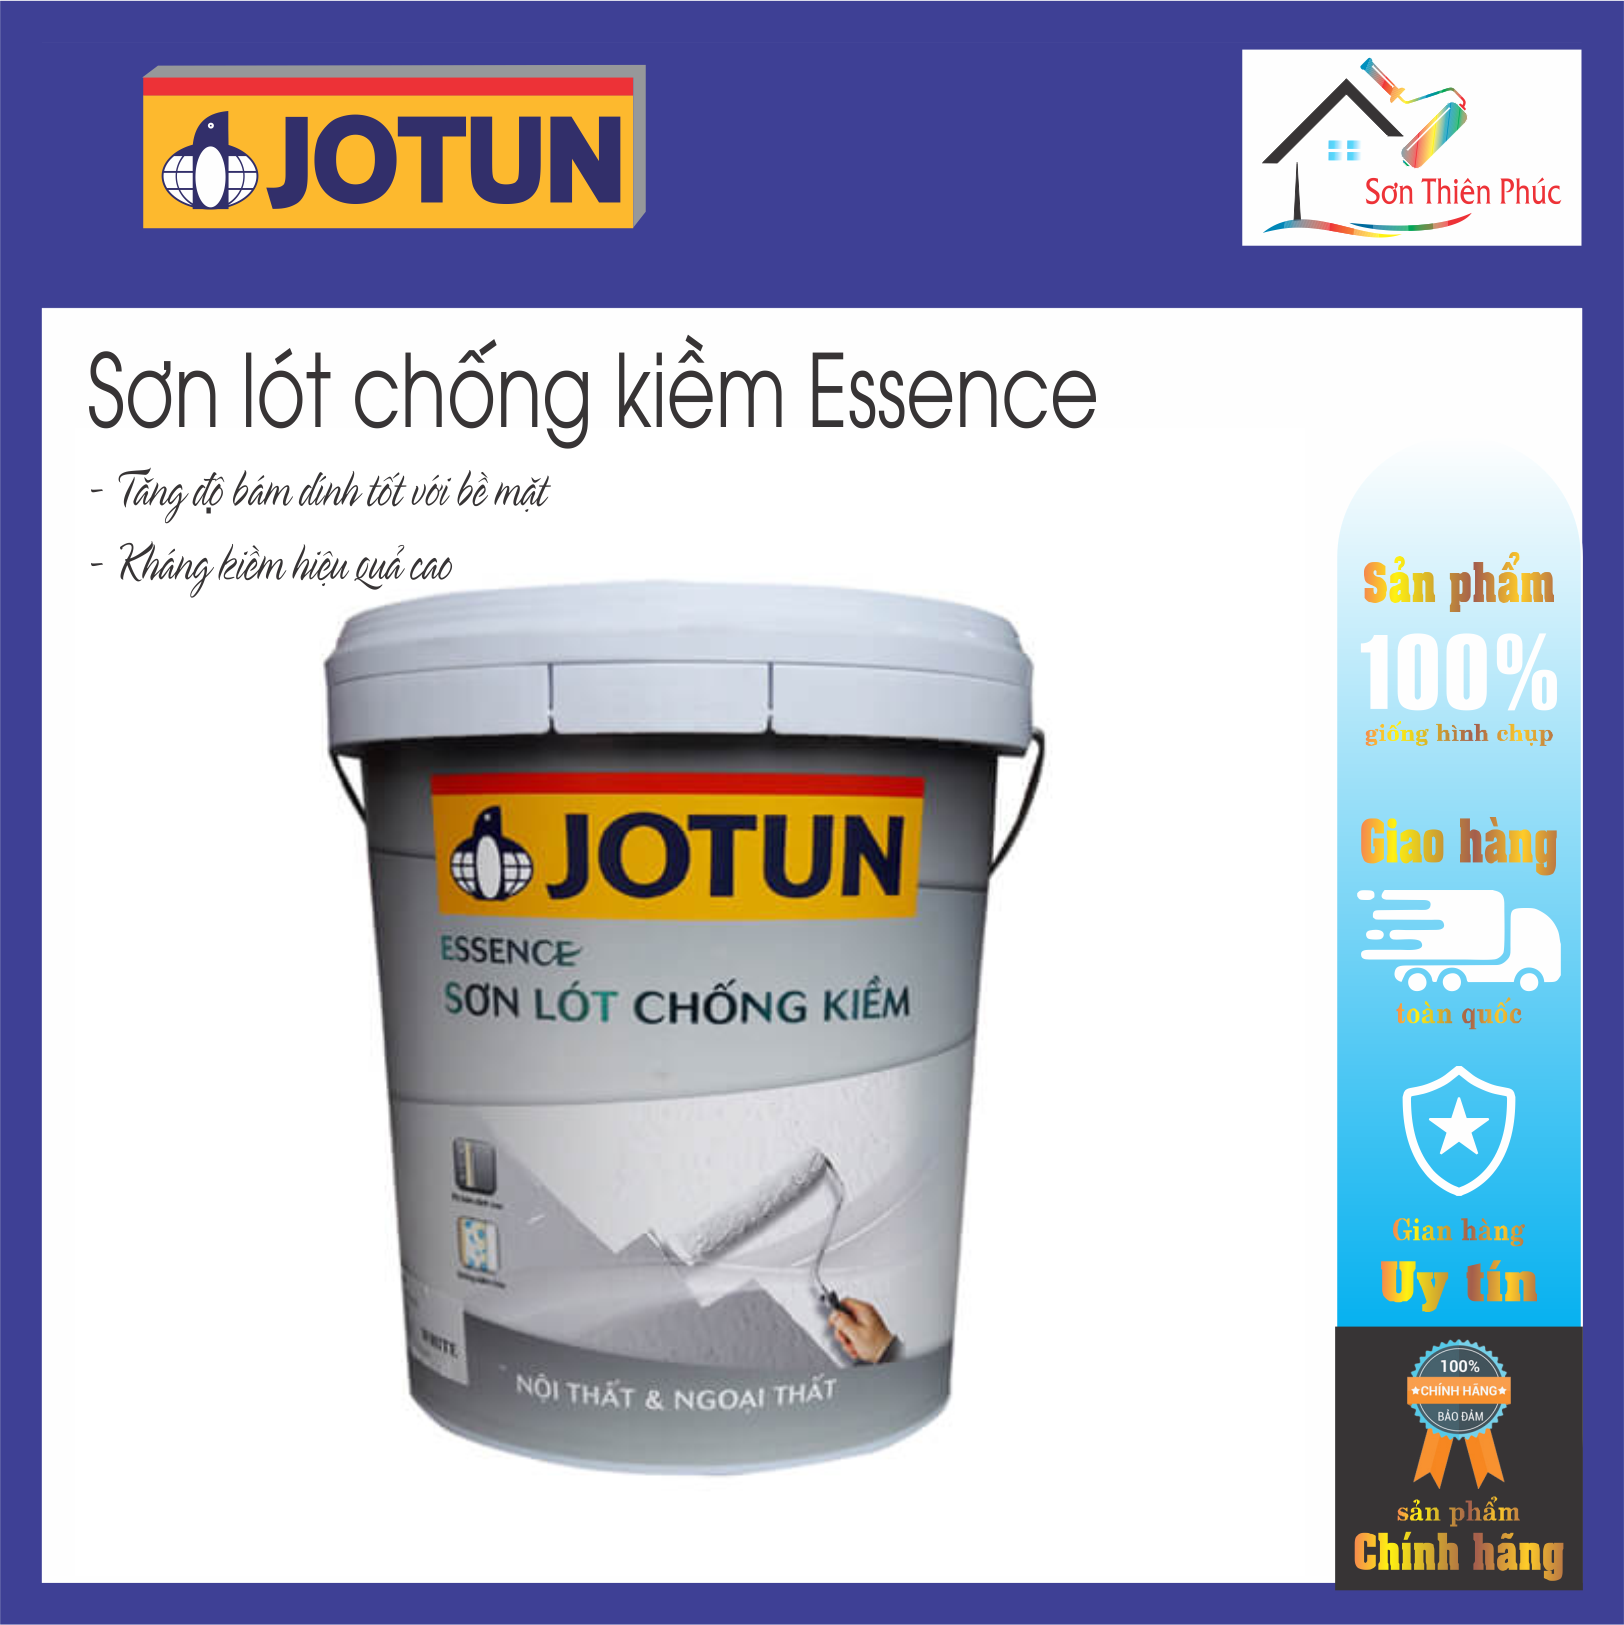 Sơn Lót Jotun Essence Chống Kiềm Nội ngoại thất (5lit). Tăng cường độ bám dính tốt cho bề mặt sơn phủ nội ngoại thất.